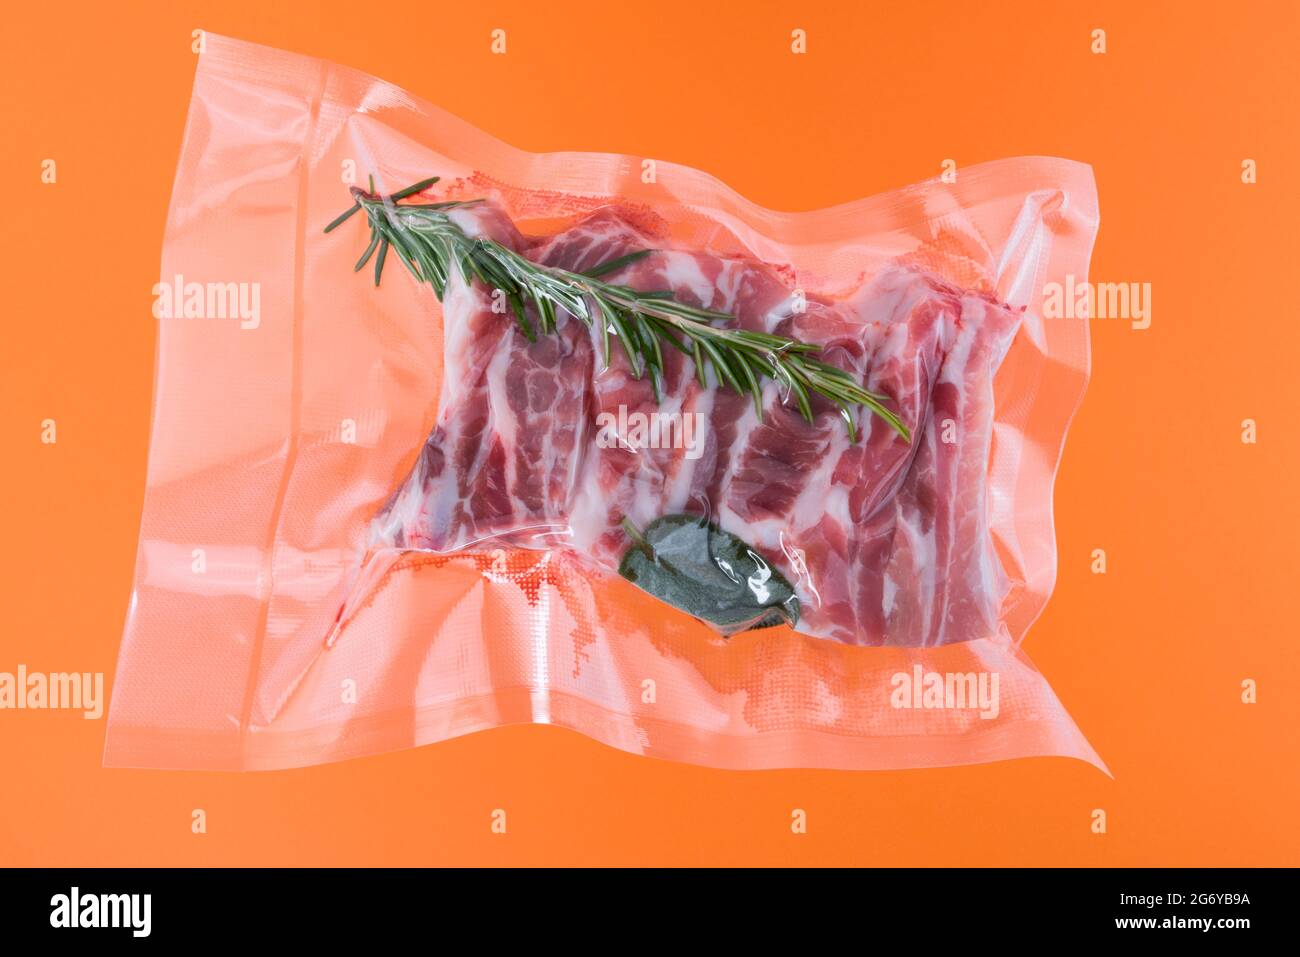 Schweineribs mit Rosmarin in vakuumverpackt, versiegelt für Sous-Vide-Kochen, isoliert auf orangefarbenem Hintergrund Stockfoto